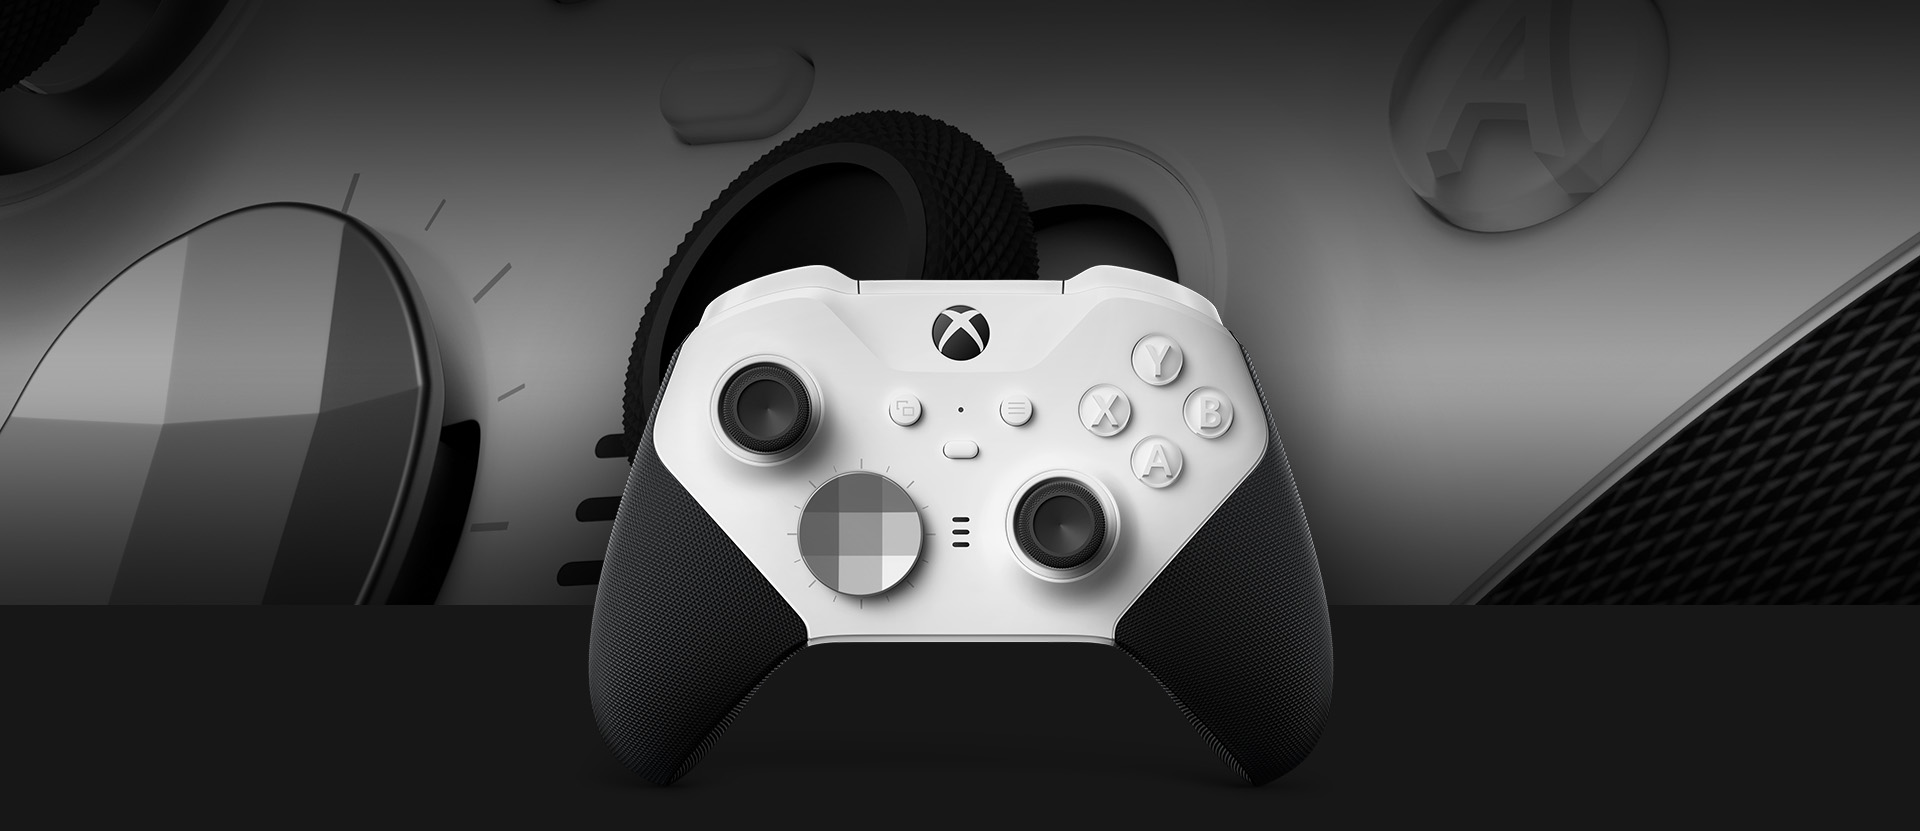 Pohľad spredu na bezdrôtový ovládač Xbox Elite Series 2 – Core s detailným pohľadom na ovládač v pozadí.